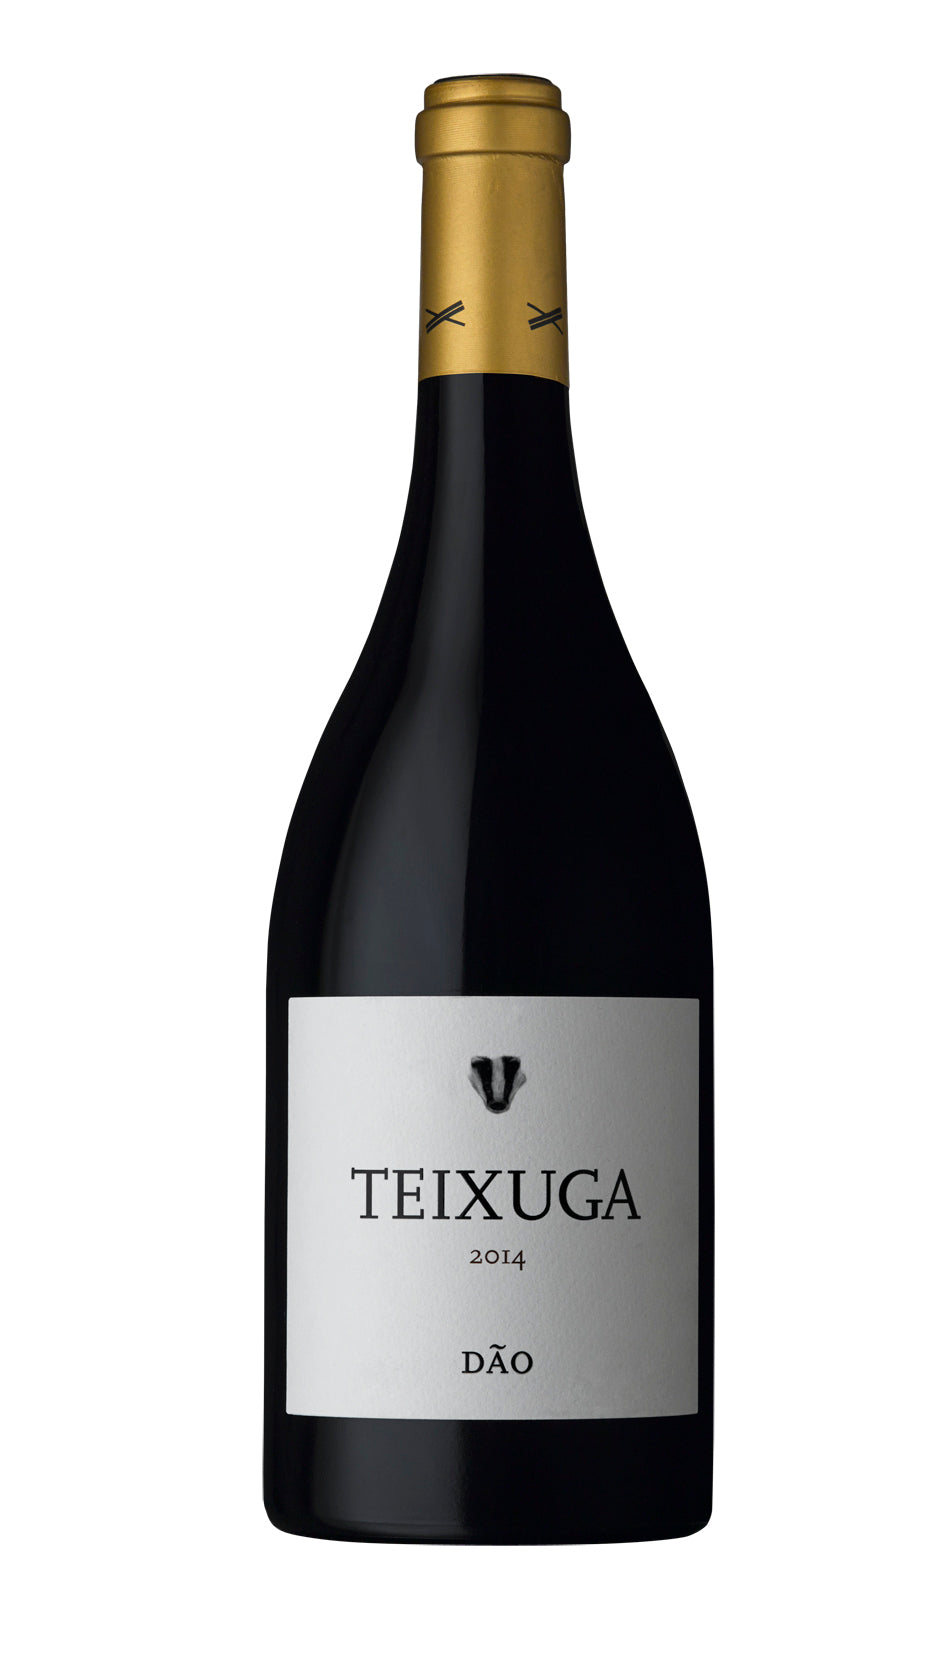 Wine Vins Teixuga Tinto